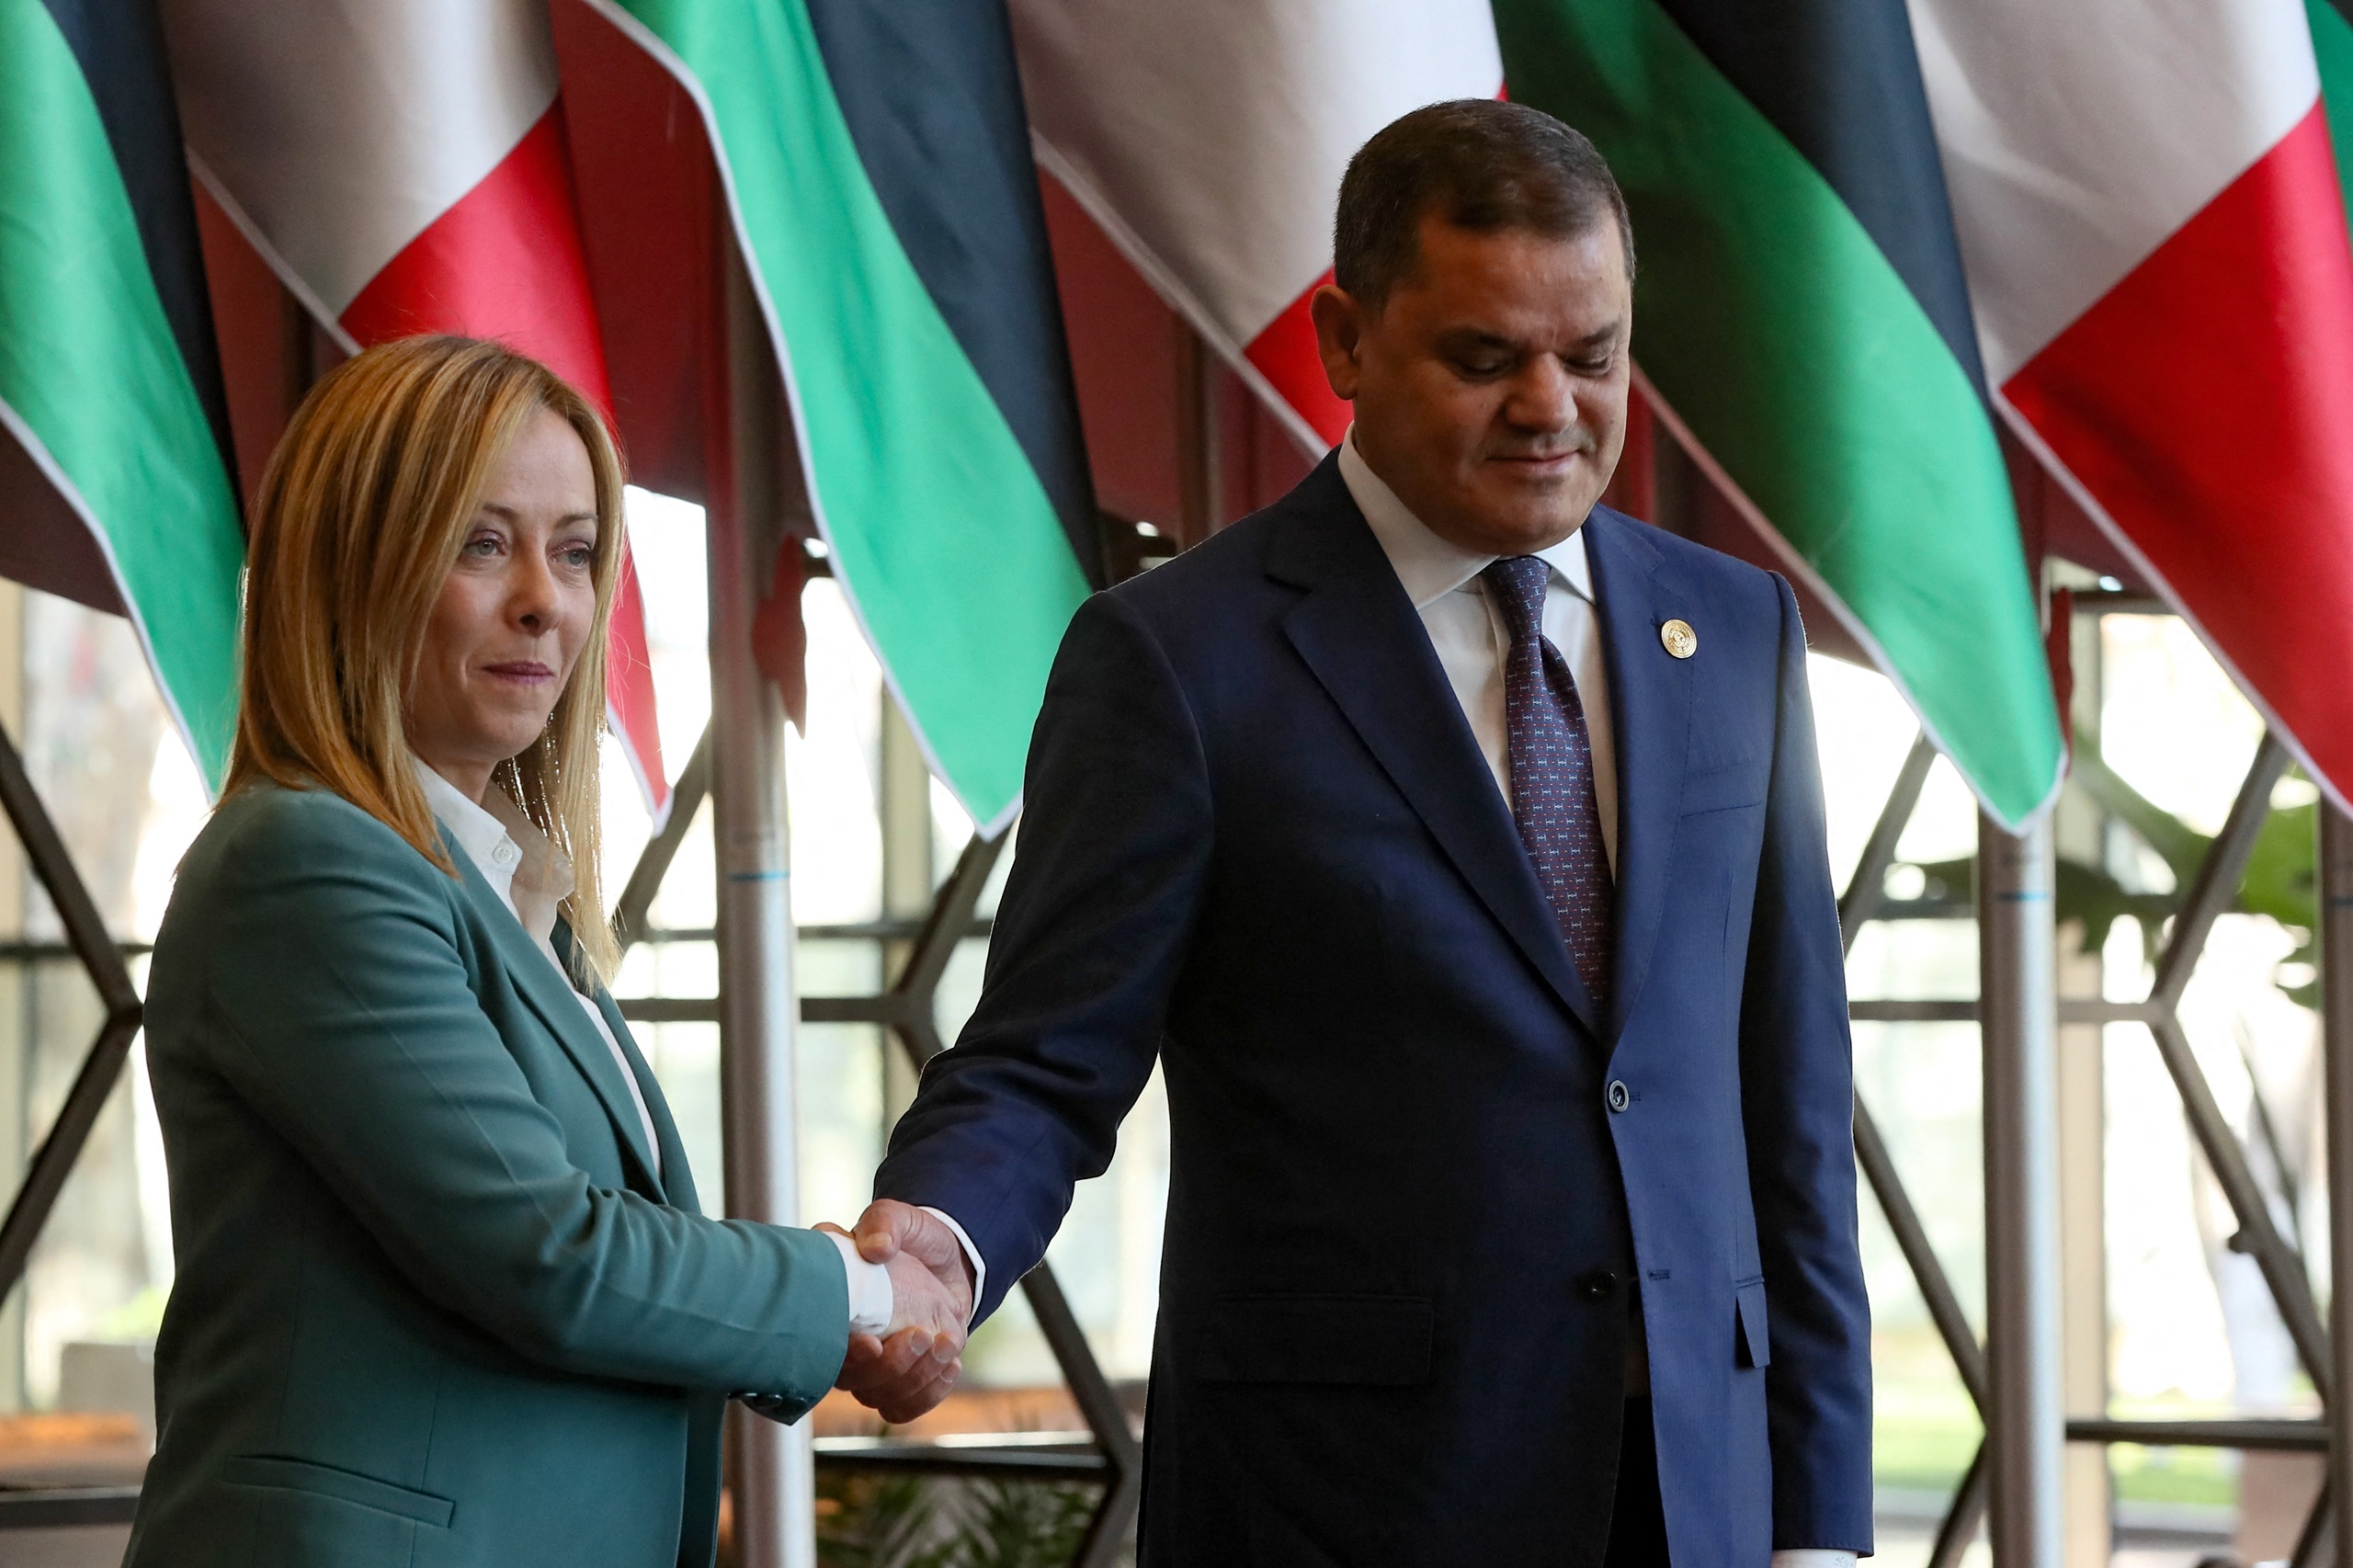 De Italiaanse premier Giorgia Meloni is vandaag in het Libische Tripoli om daar een gasdeal te sluiten, die de toevoer van energie richting Europa moet bevorderen. Ondanks de onzekerheid en de politieke chaos in het Noord-Afrikaanse land. Dat schrijft Reuters.